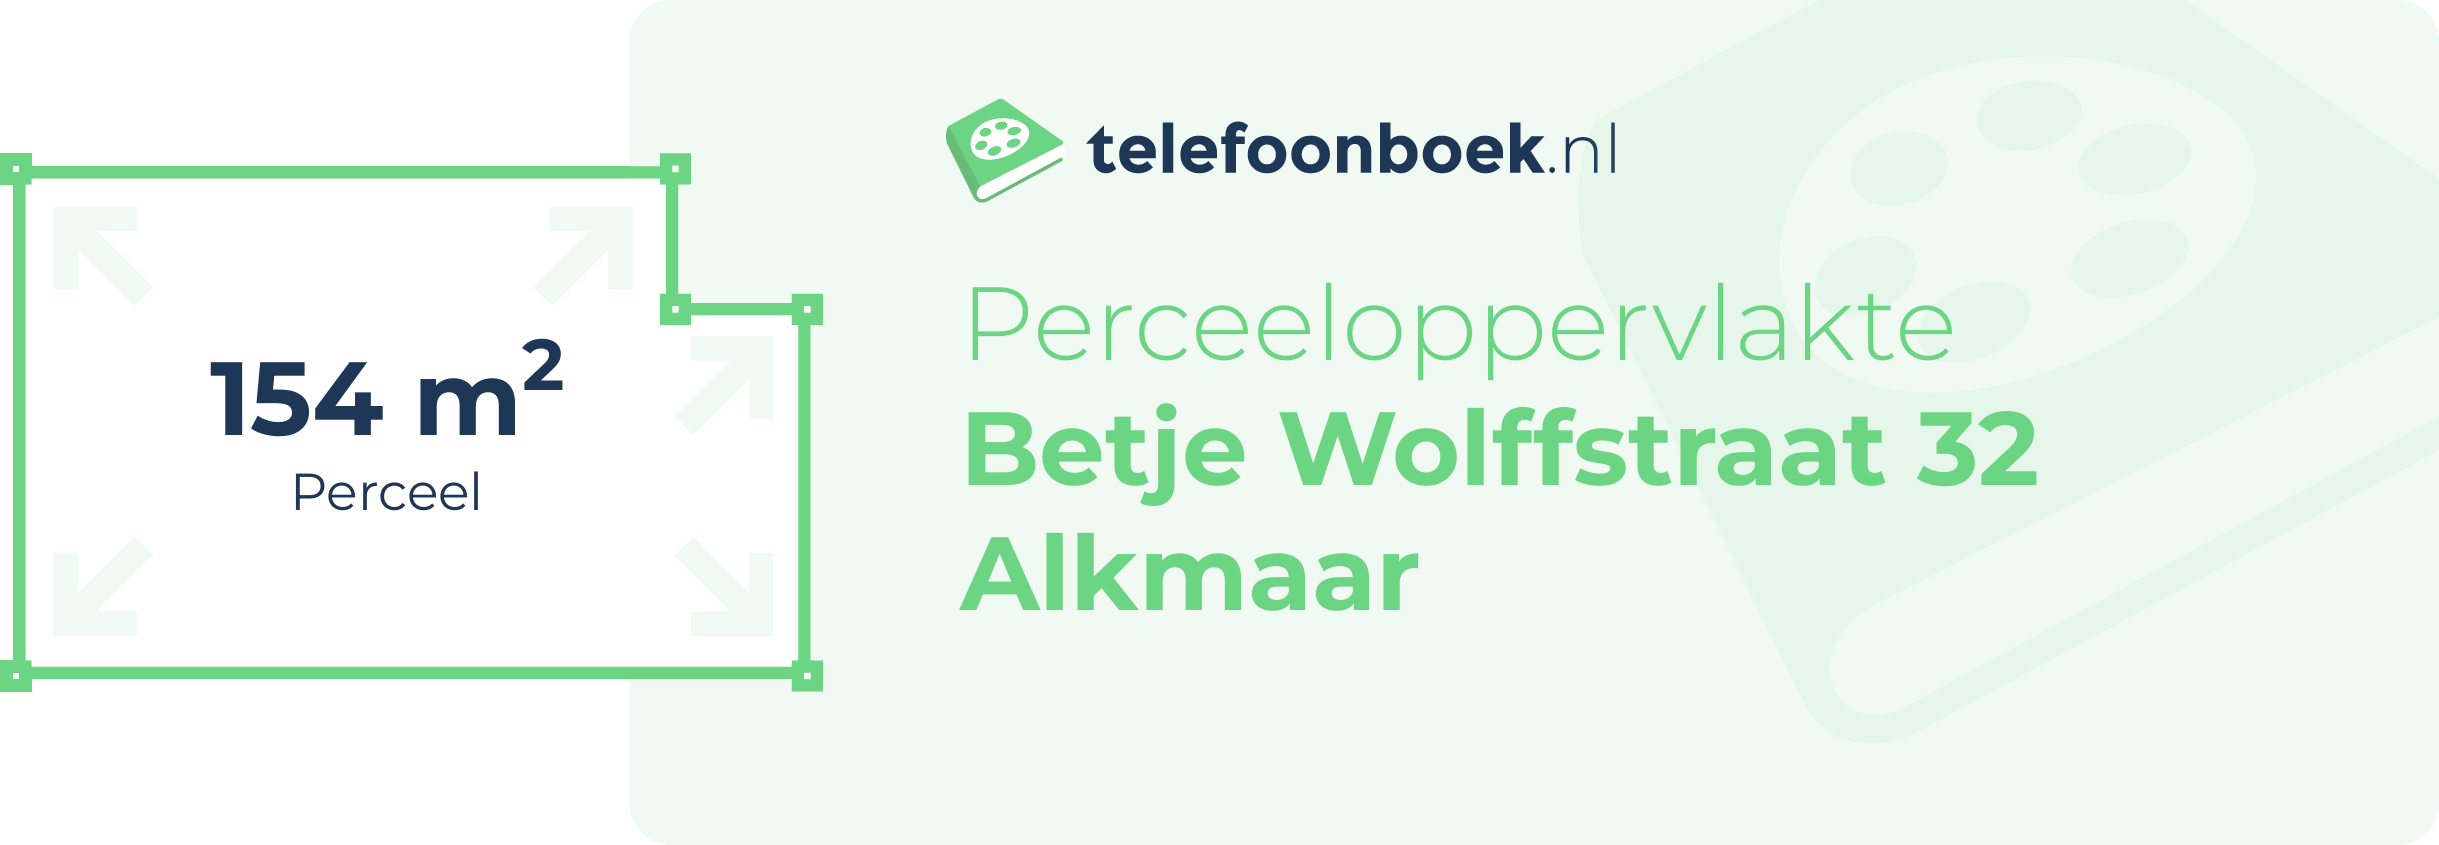 Perceeloppervlakte Betje Wolffstraat 32 Alkmaar